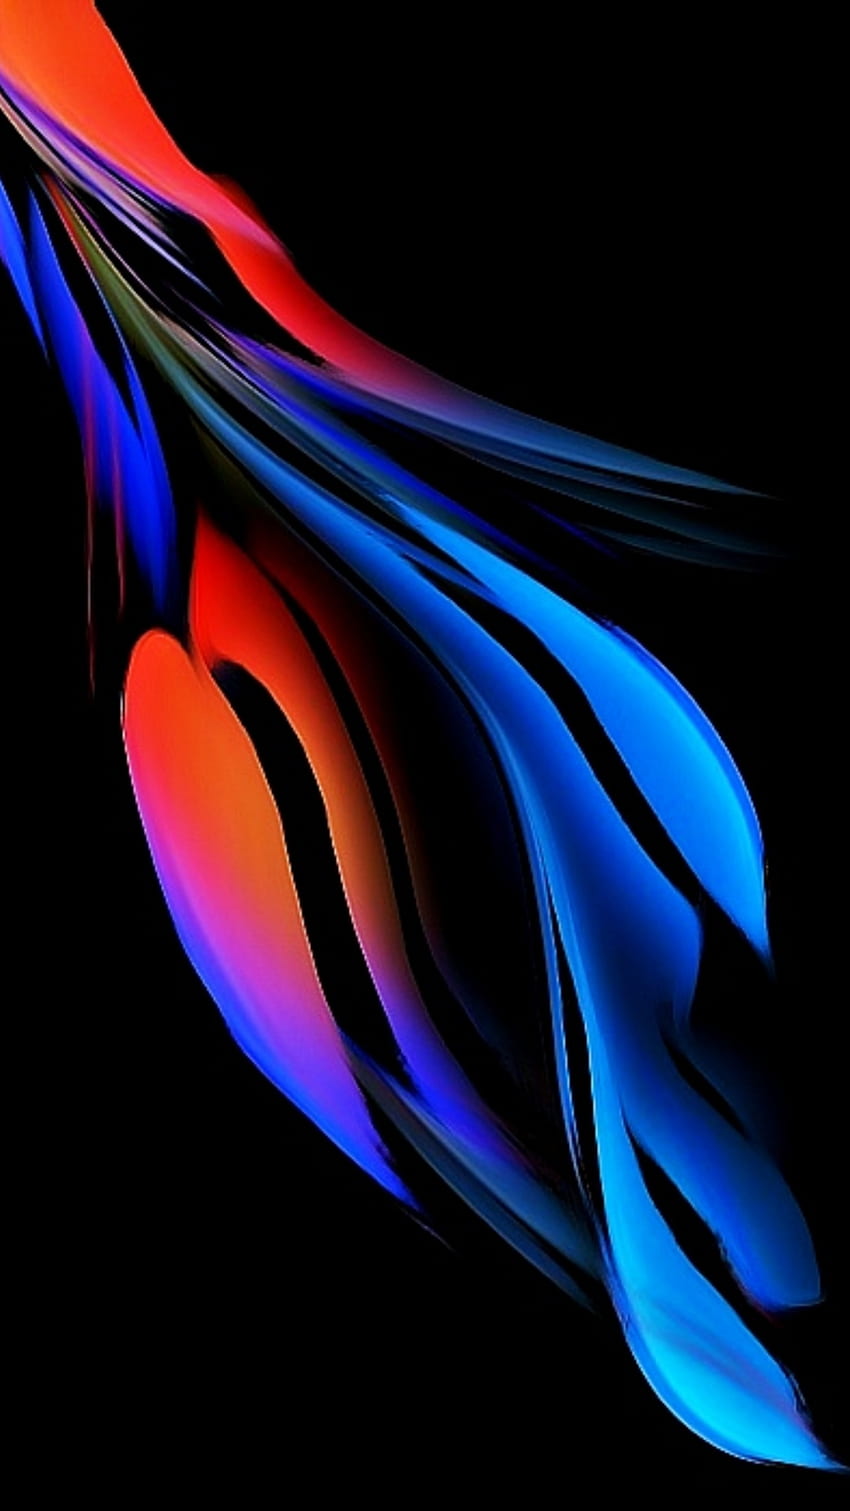 gfdfdsf, digital, azul elétrico, magenta, novo, sombra, néon, preto, abstrato, matiz, flor, vermelho, amoled, suave Papel de parede de celular HD